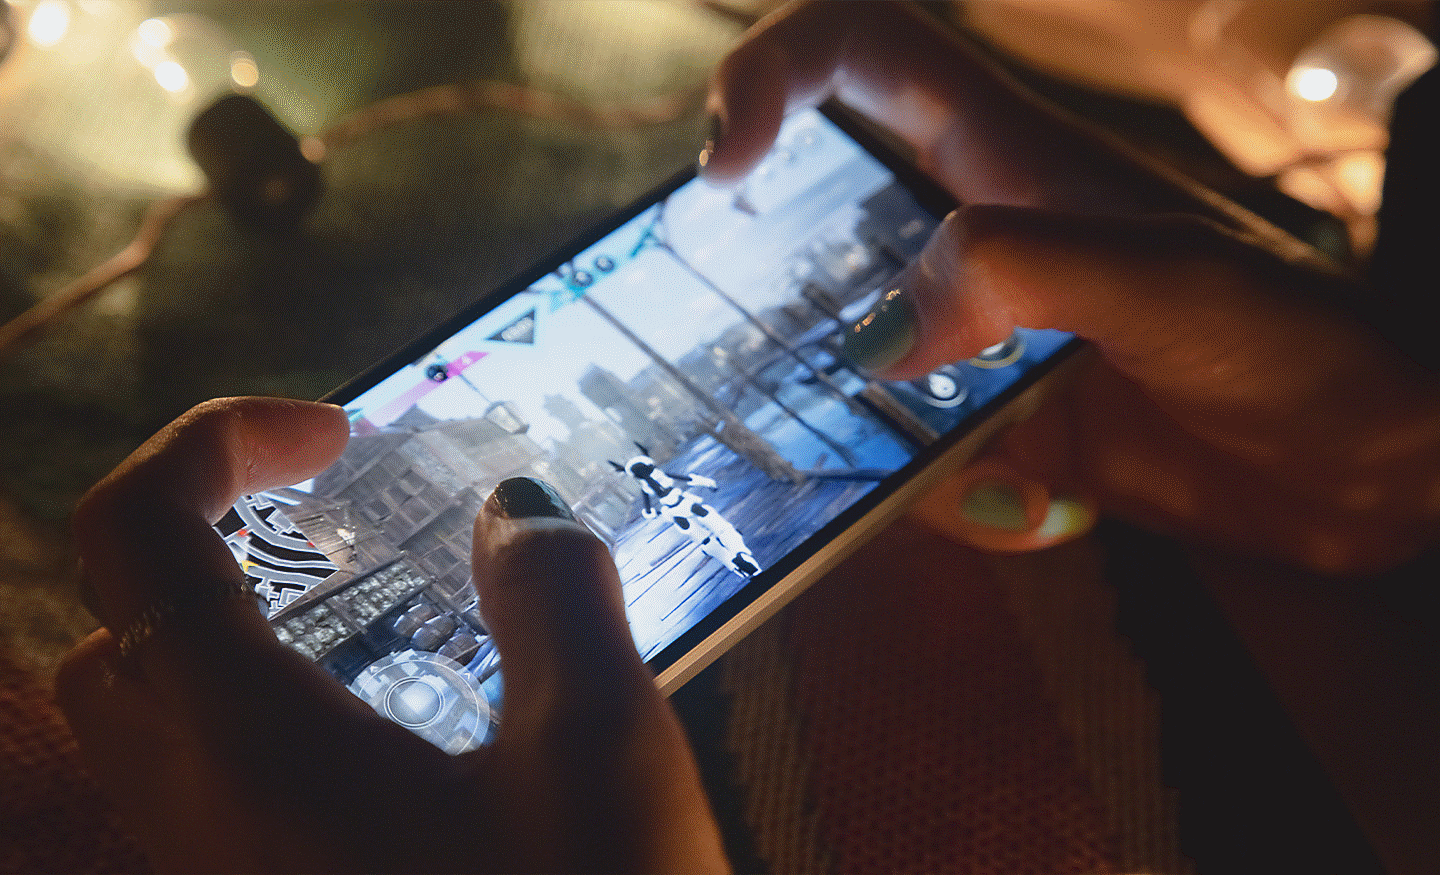 Hình ảnh cận cảnh một người đang chơi game trên Xperia 5 V bằng cả hai tay